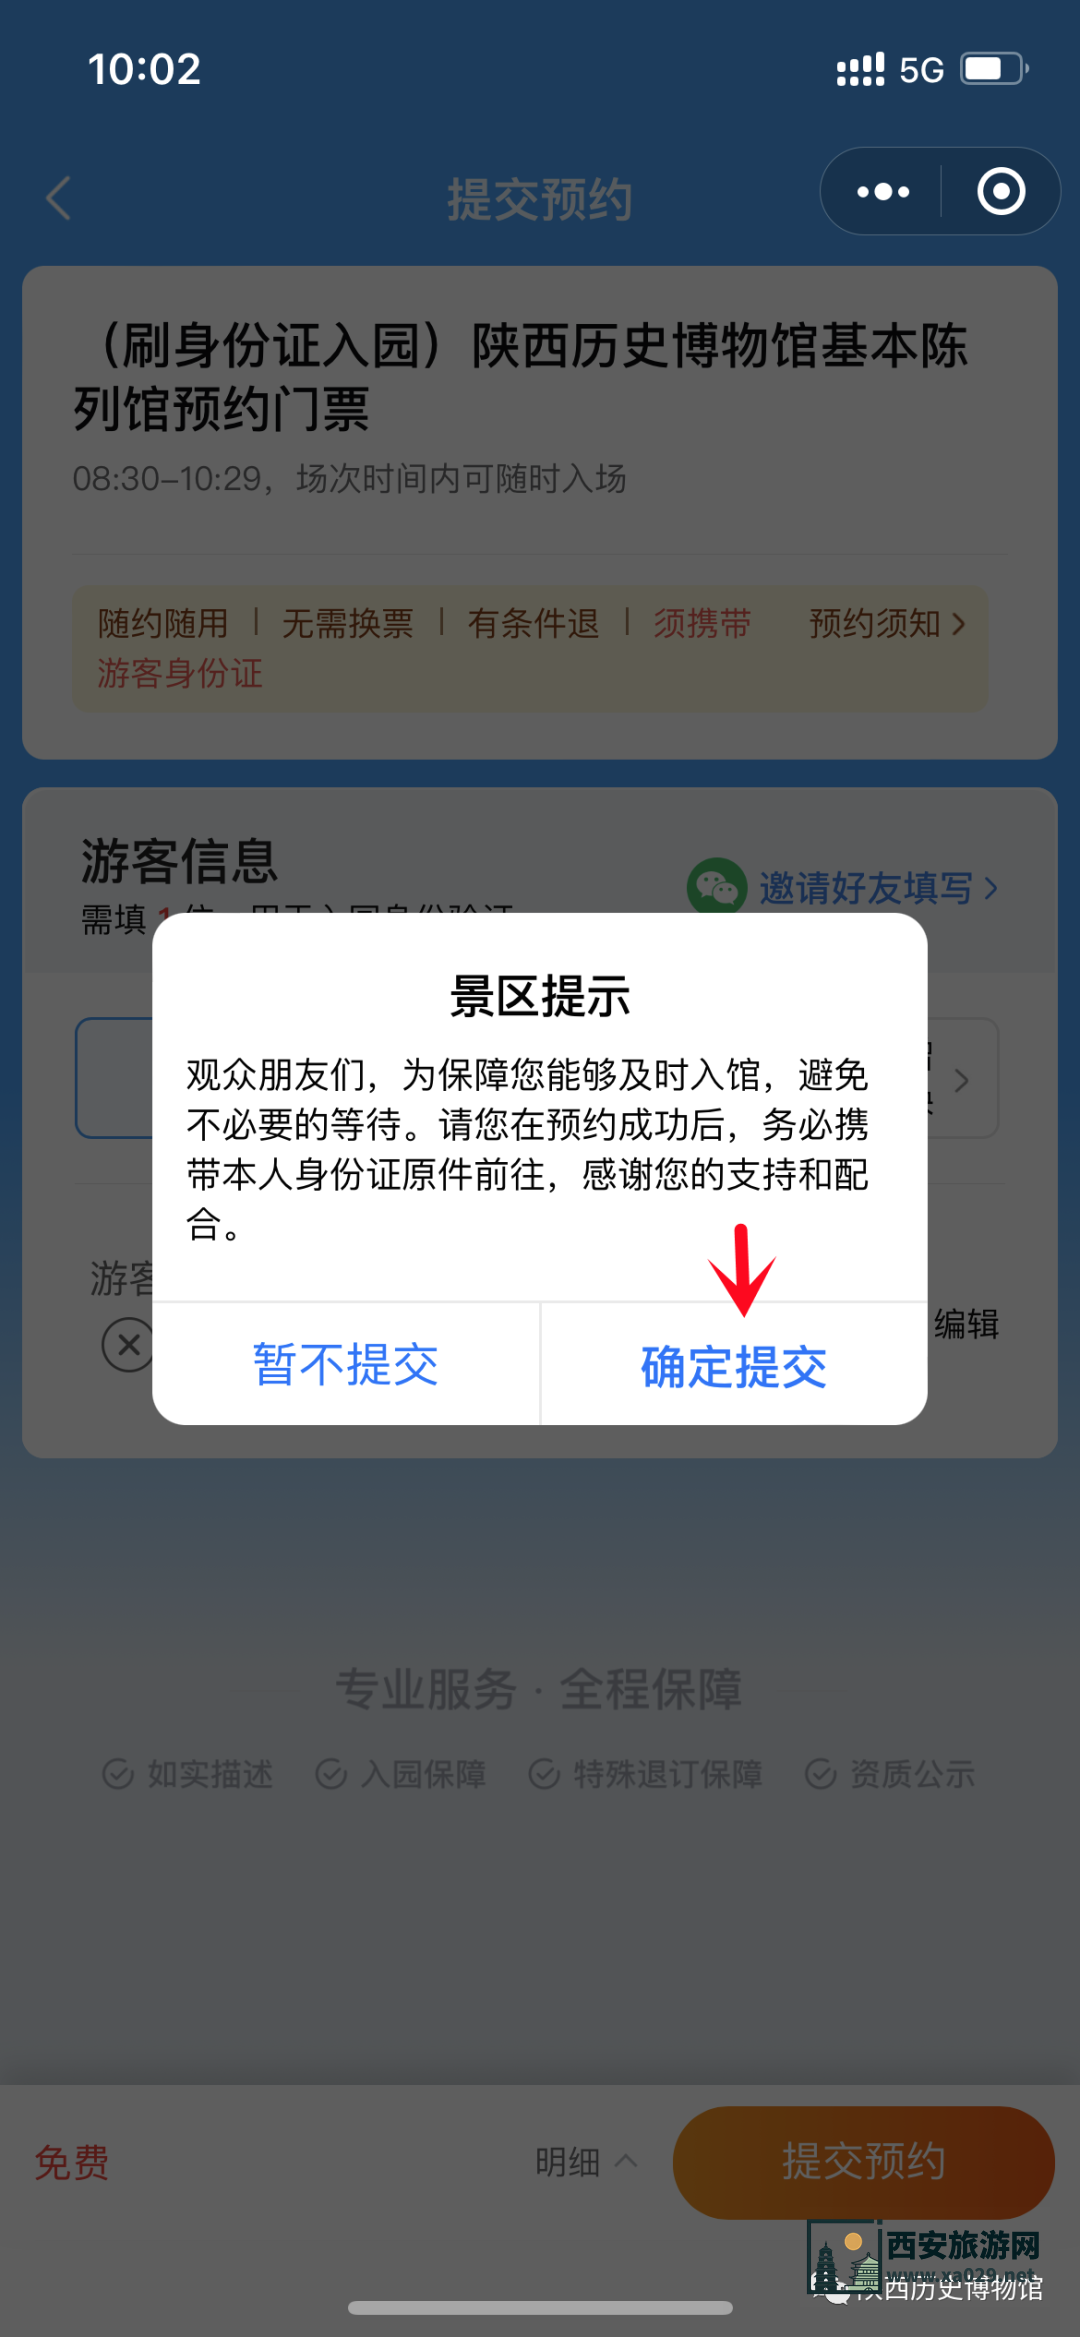 陕西历史博物馆官方网站预约平台及详细预约步骤攻略